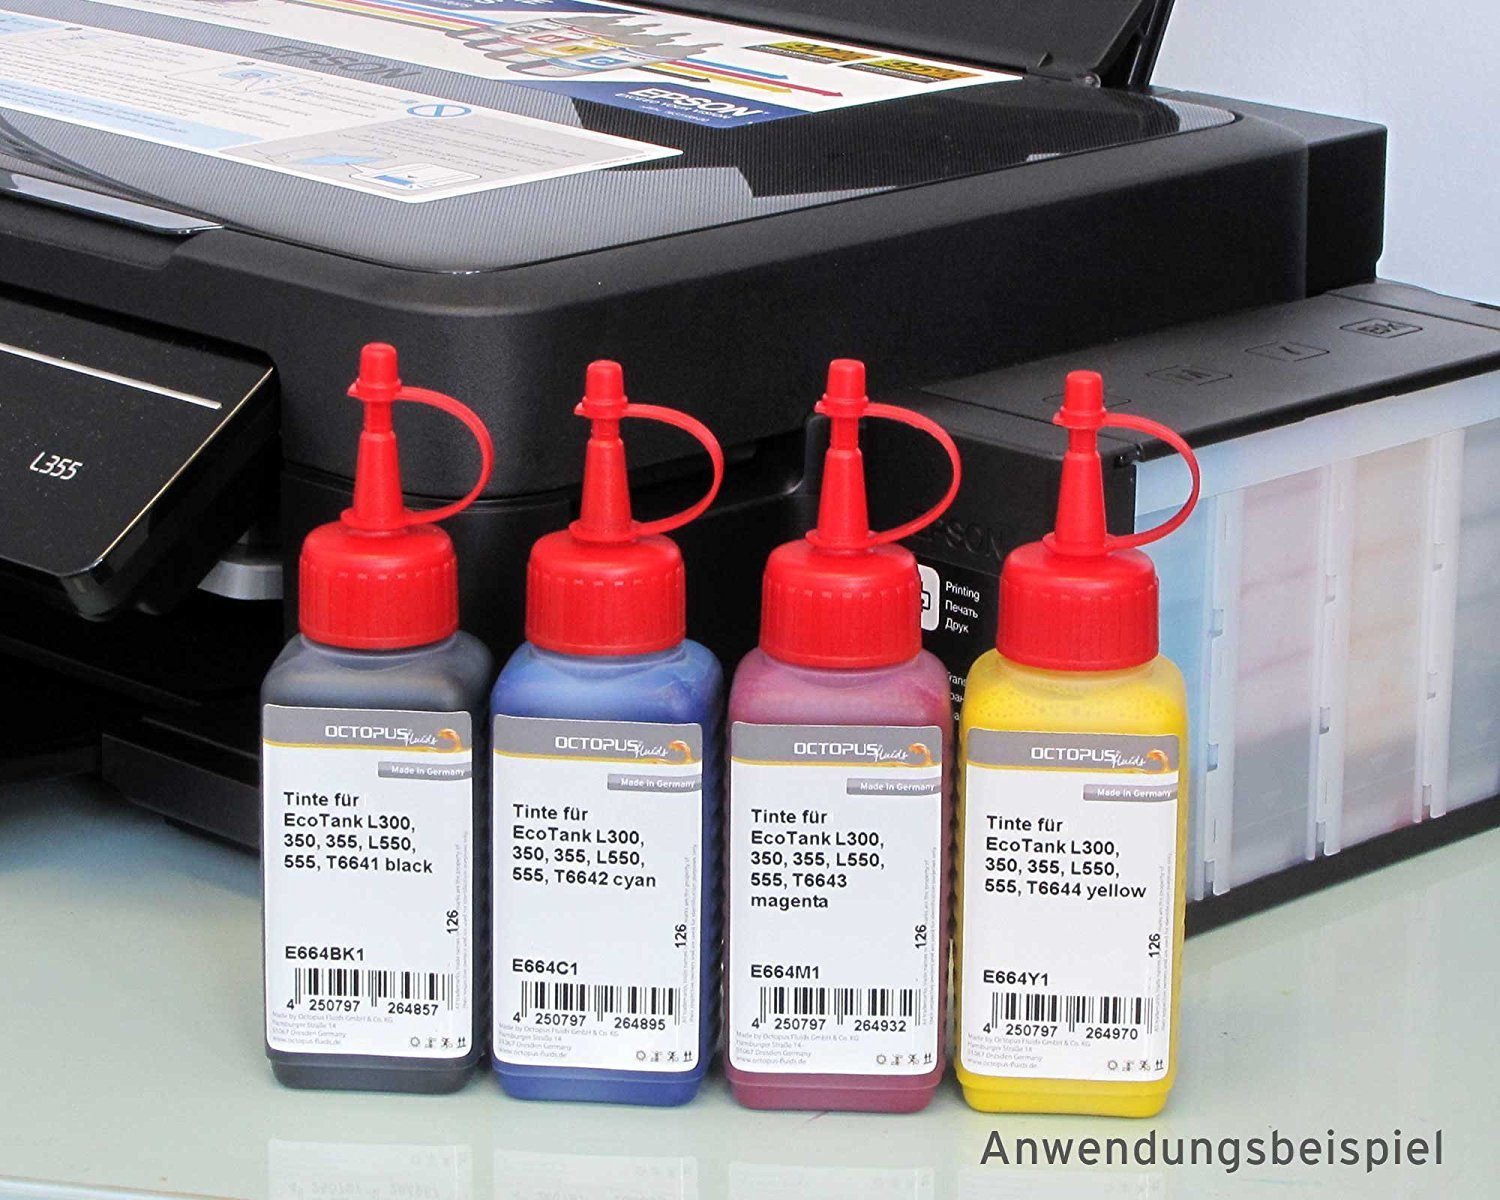 L355, 100ml Epson ml) Gelb Druckertinte EcoTank 100 (für T6644 gelb Drucker, L555 1x Epson, L300, Fluids OCTOPUS Nachfülltinte